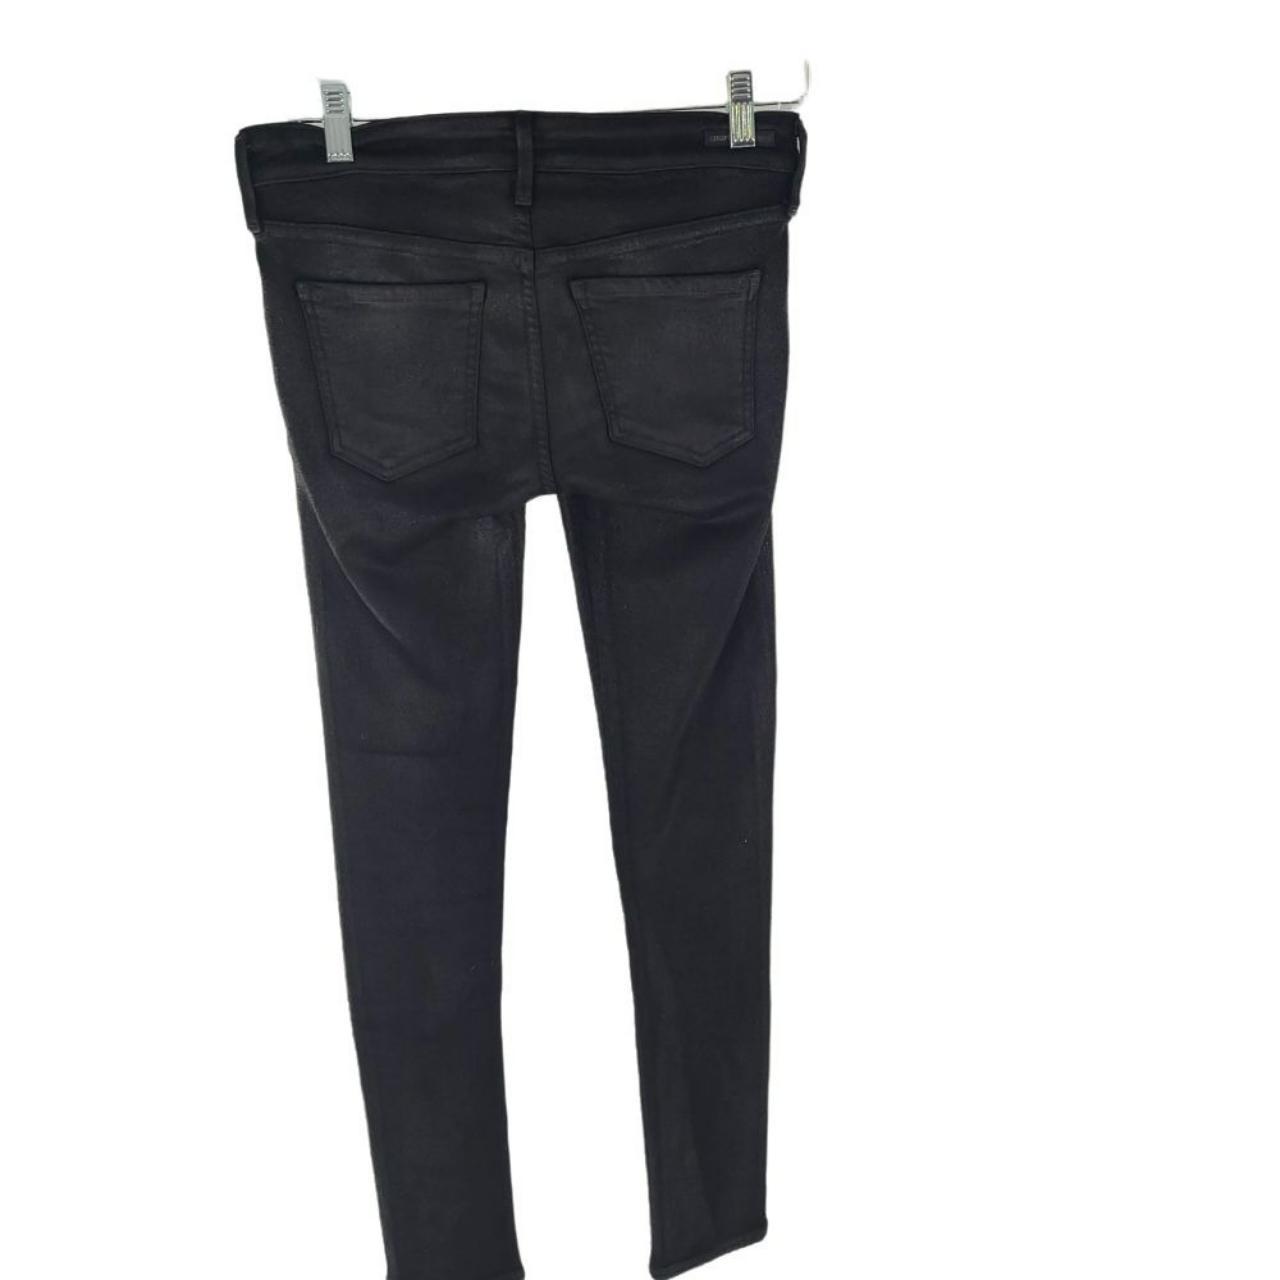 C of H By JEROME DANAN Women's Skinny Leather Jeans... - Depop